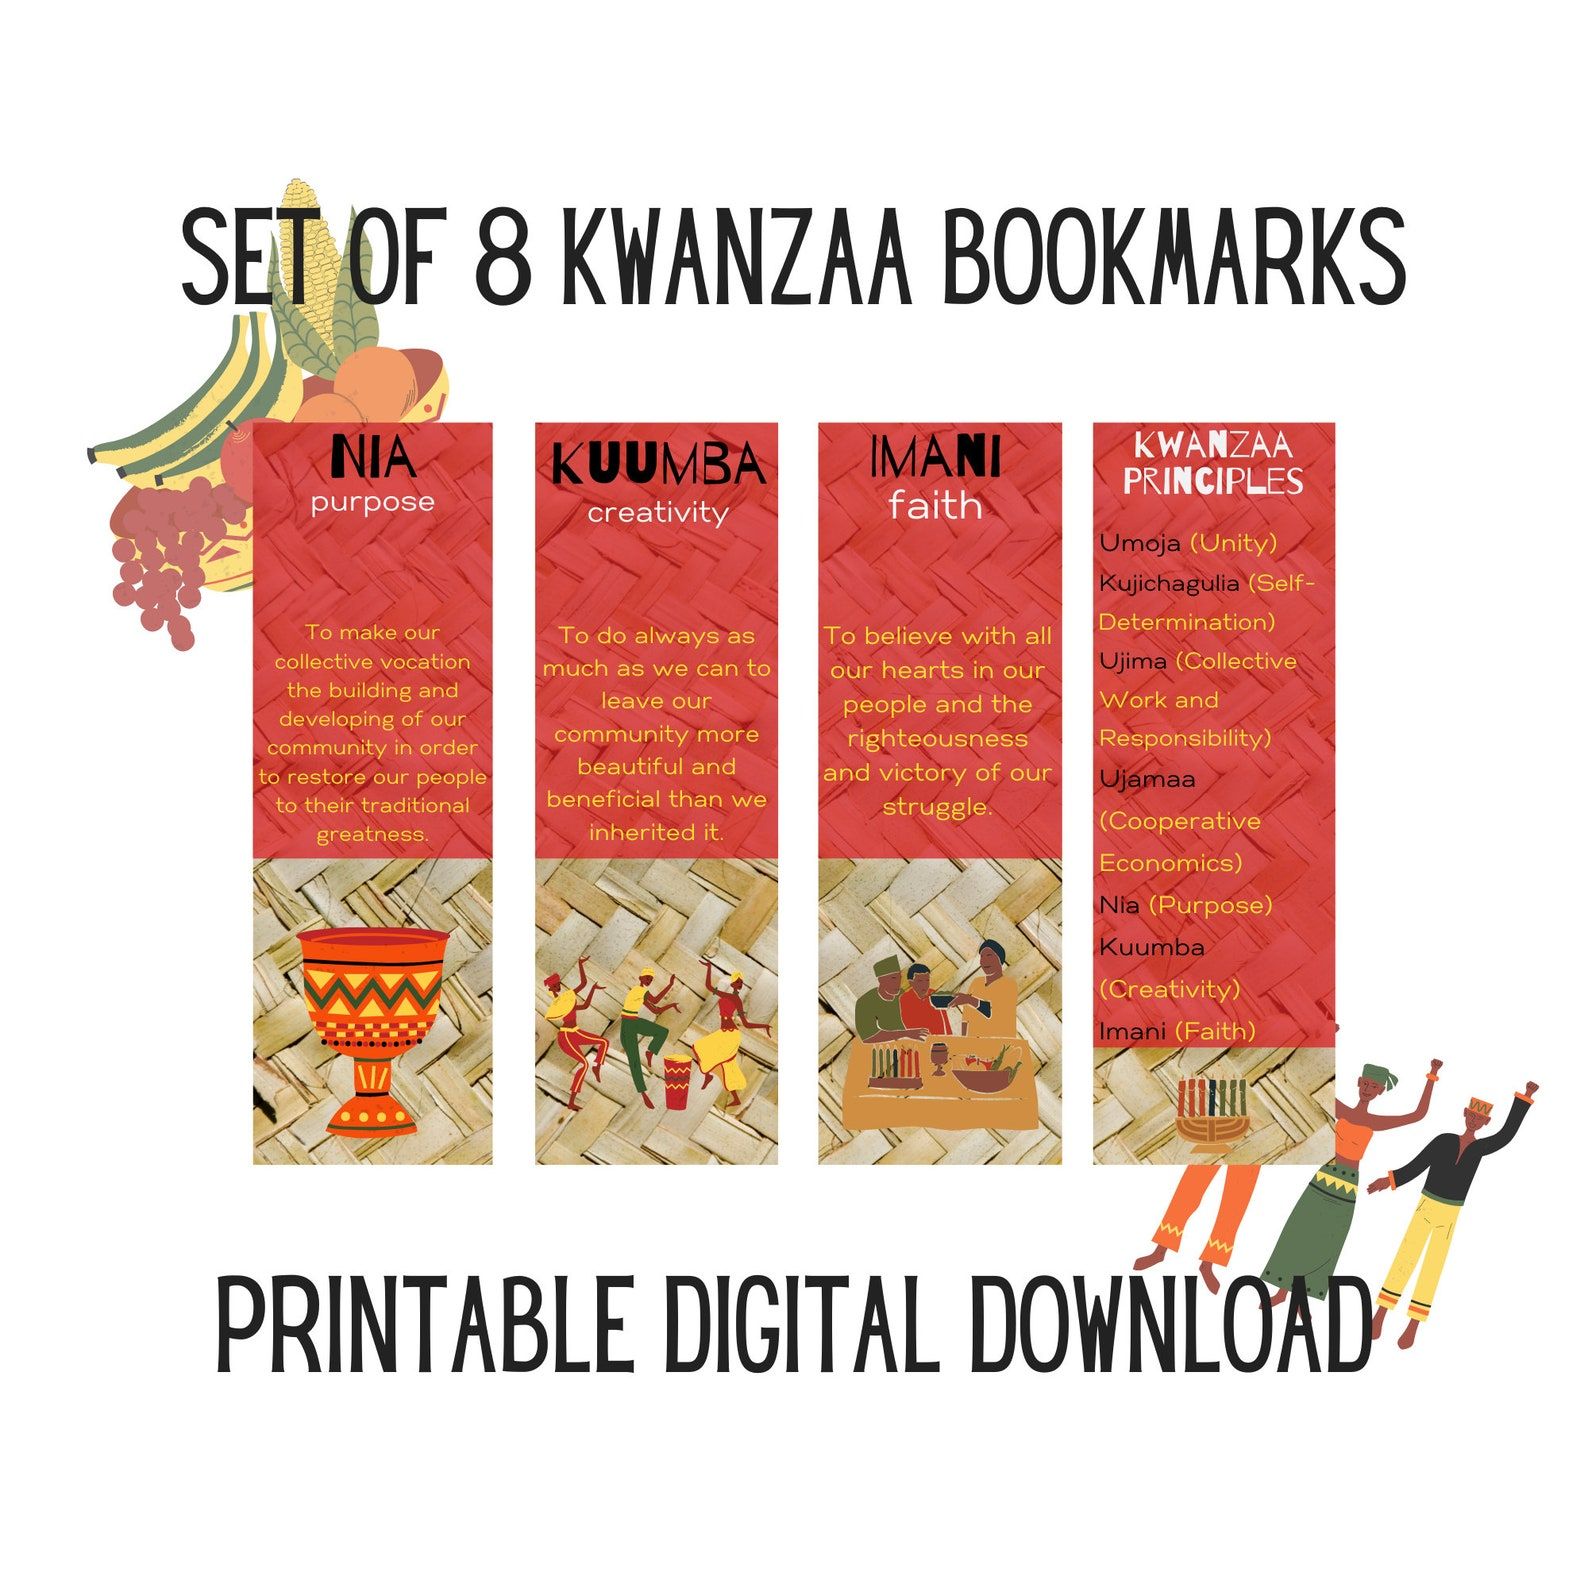 Ensemble imprimable de quatre signets.  Les trois premiers comprennent des descriptions des principes de Kwanzaa en texte jaune sur fond rouge.  Le signet final présente tous les principes en texte noir et jaune sur fond rouge. 